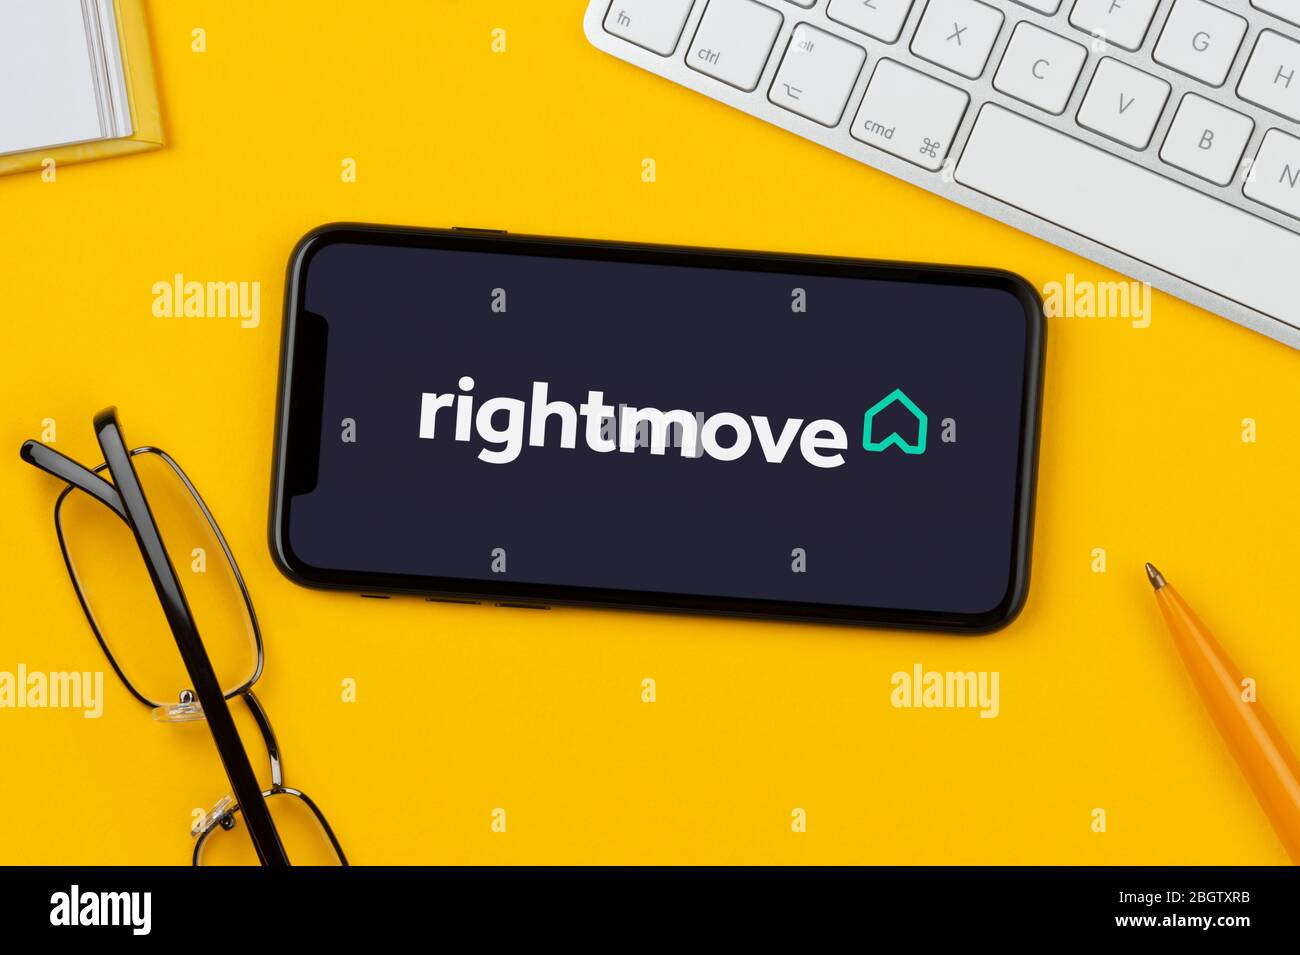 Uno smartphone con il logo RightMove poggia su uno sfondo giallo insieme a tastiera, occhiali, penna e libro (solo per uso editoriale). Foto Stock